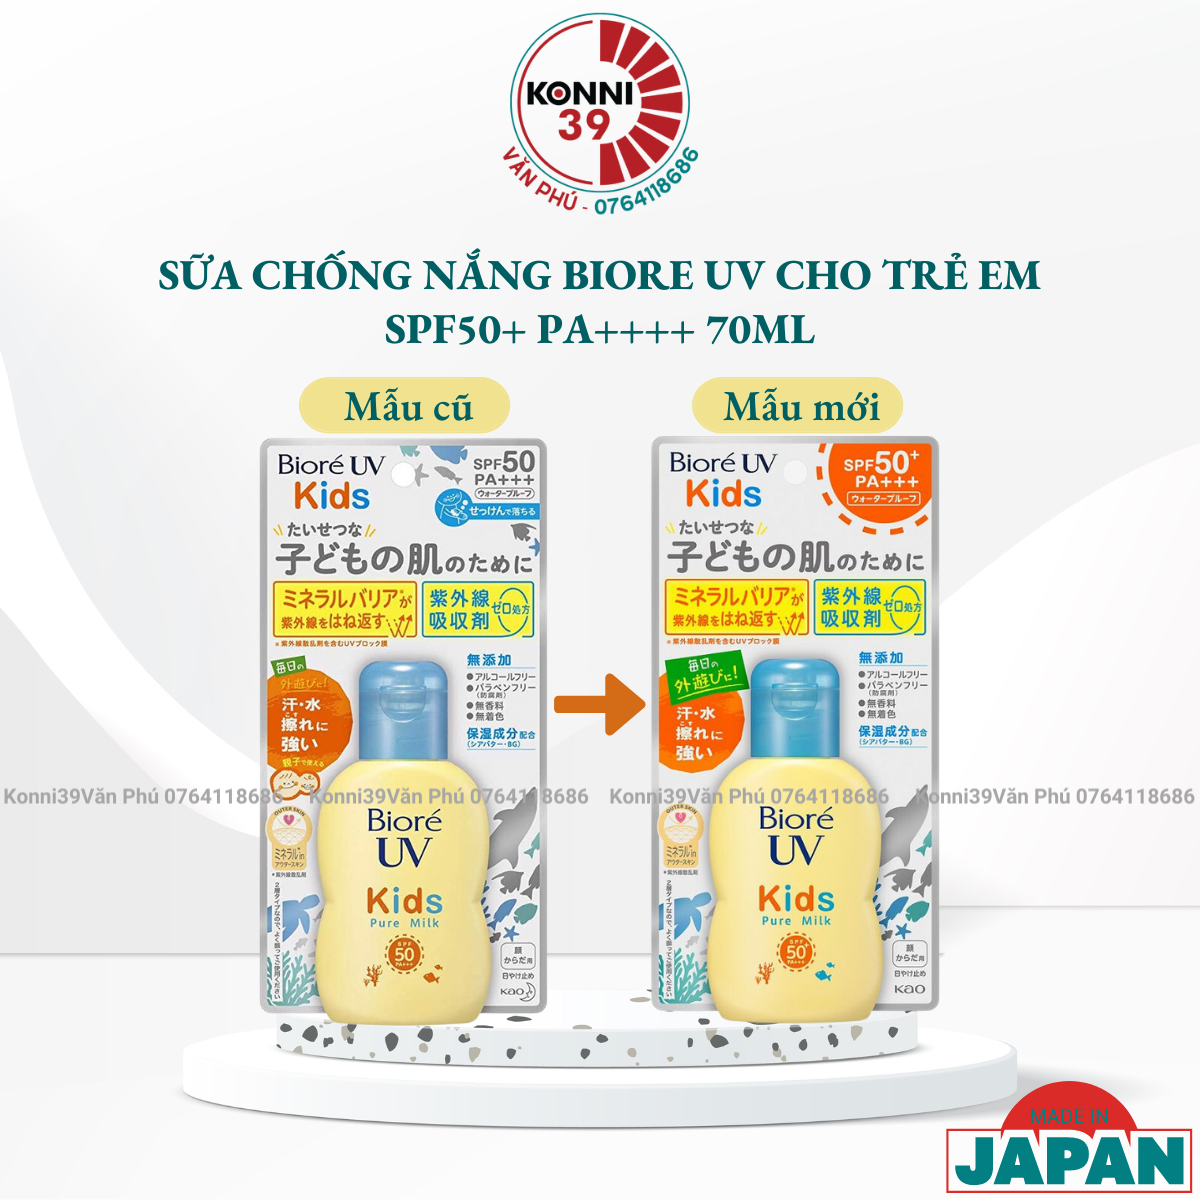 Sữa chống nắng Biore UV cho trẻ em SPF50+ PA++++ 70ml Nhật Bản